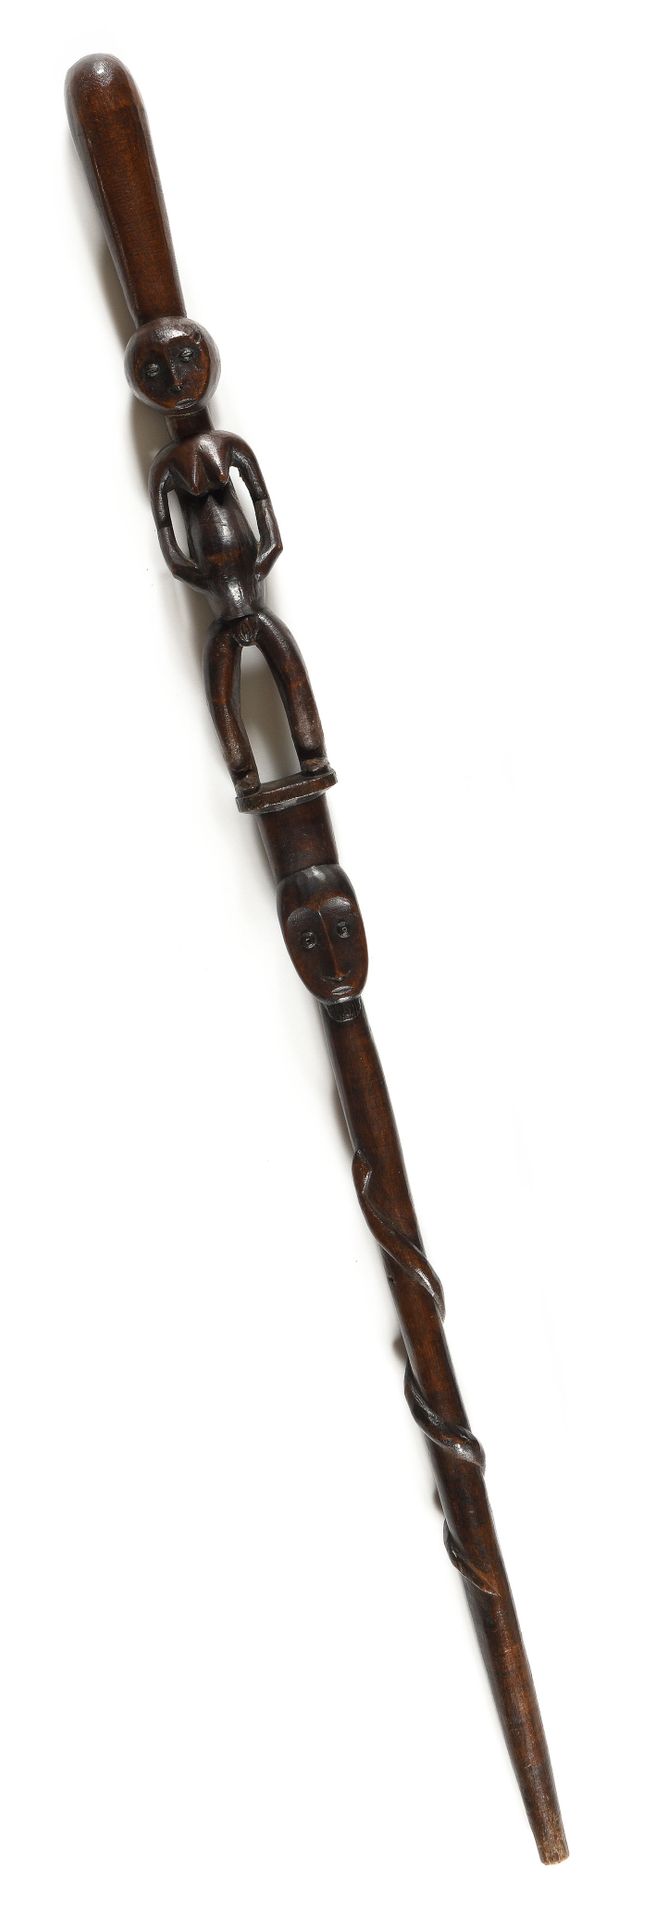 Null 部落首领的手杖：蛇，长有山羊胡子的头，年轻女子站着。雕刻的木头

刚果

出处：霍夫曼博士的旧藏